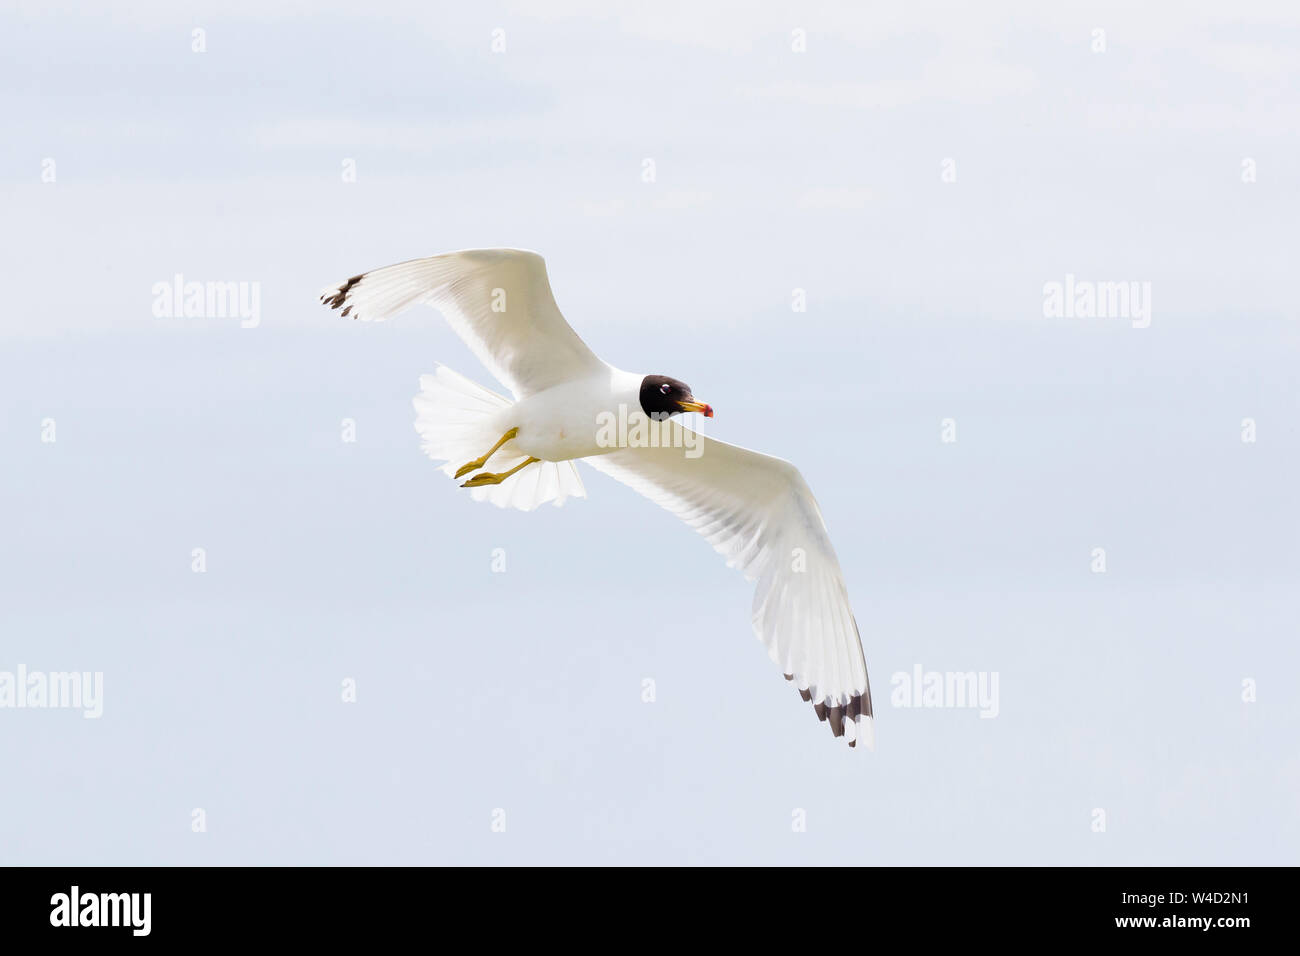 Pallas's gull flying against  blue sky Stock Photo